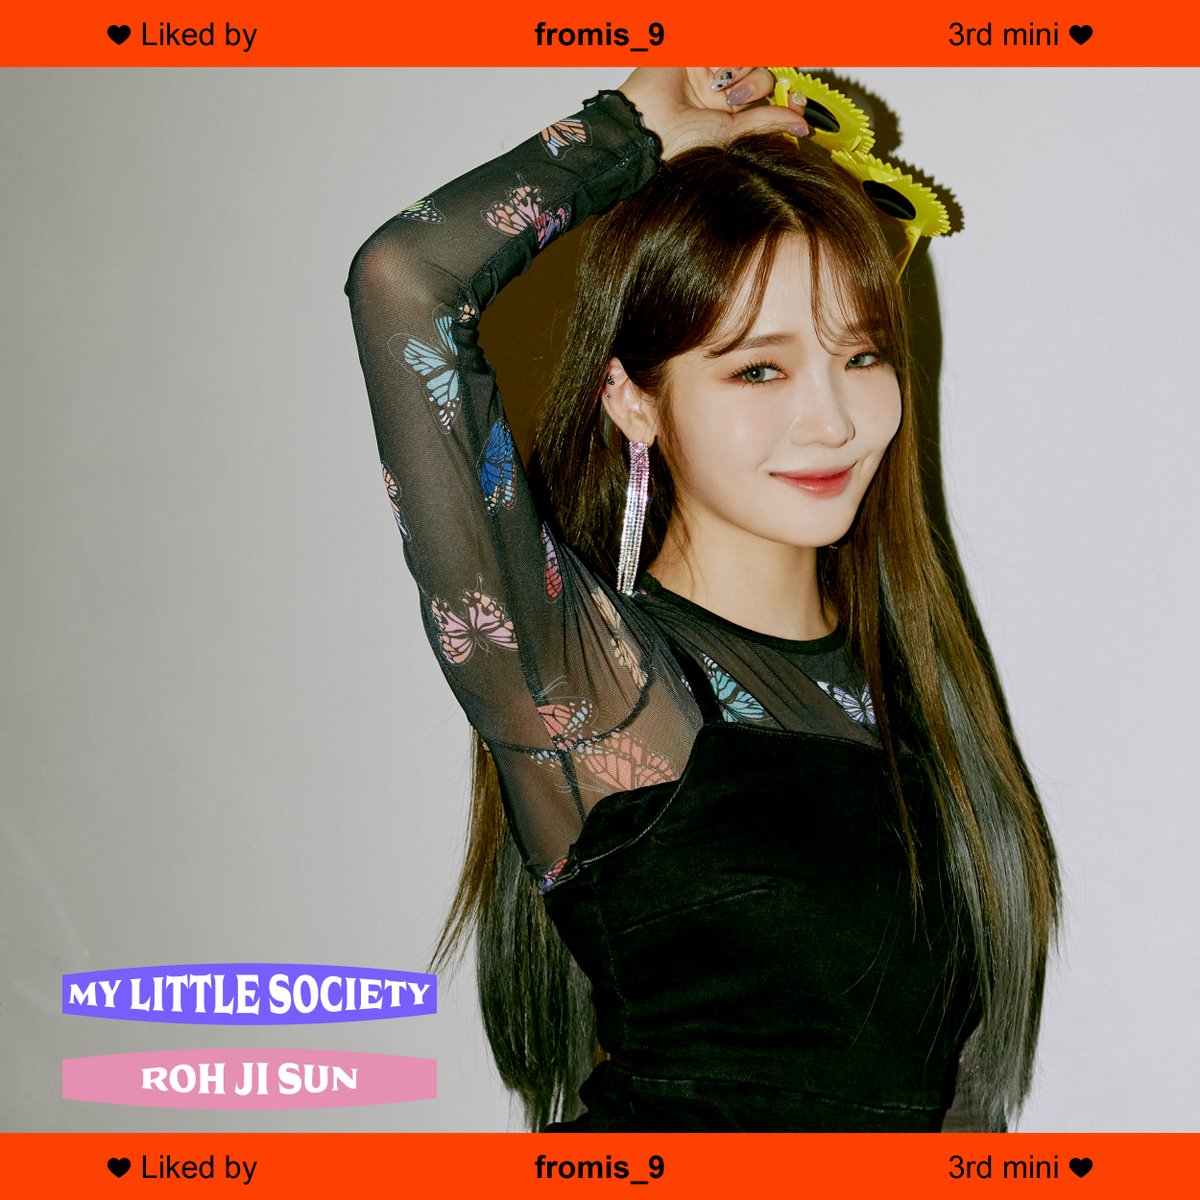 프로미스나인(fromis_9) 
The 3rd Mini Album ‘My Little Society’

✔Official Photo My society ver.
#노지선 #ROHJISUN

#fromis_9 #프로미스나인
#My_Little_Society
#M_L_S #20200916_6PM